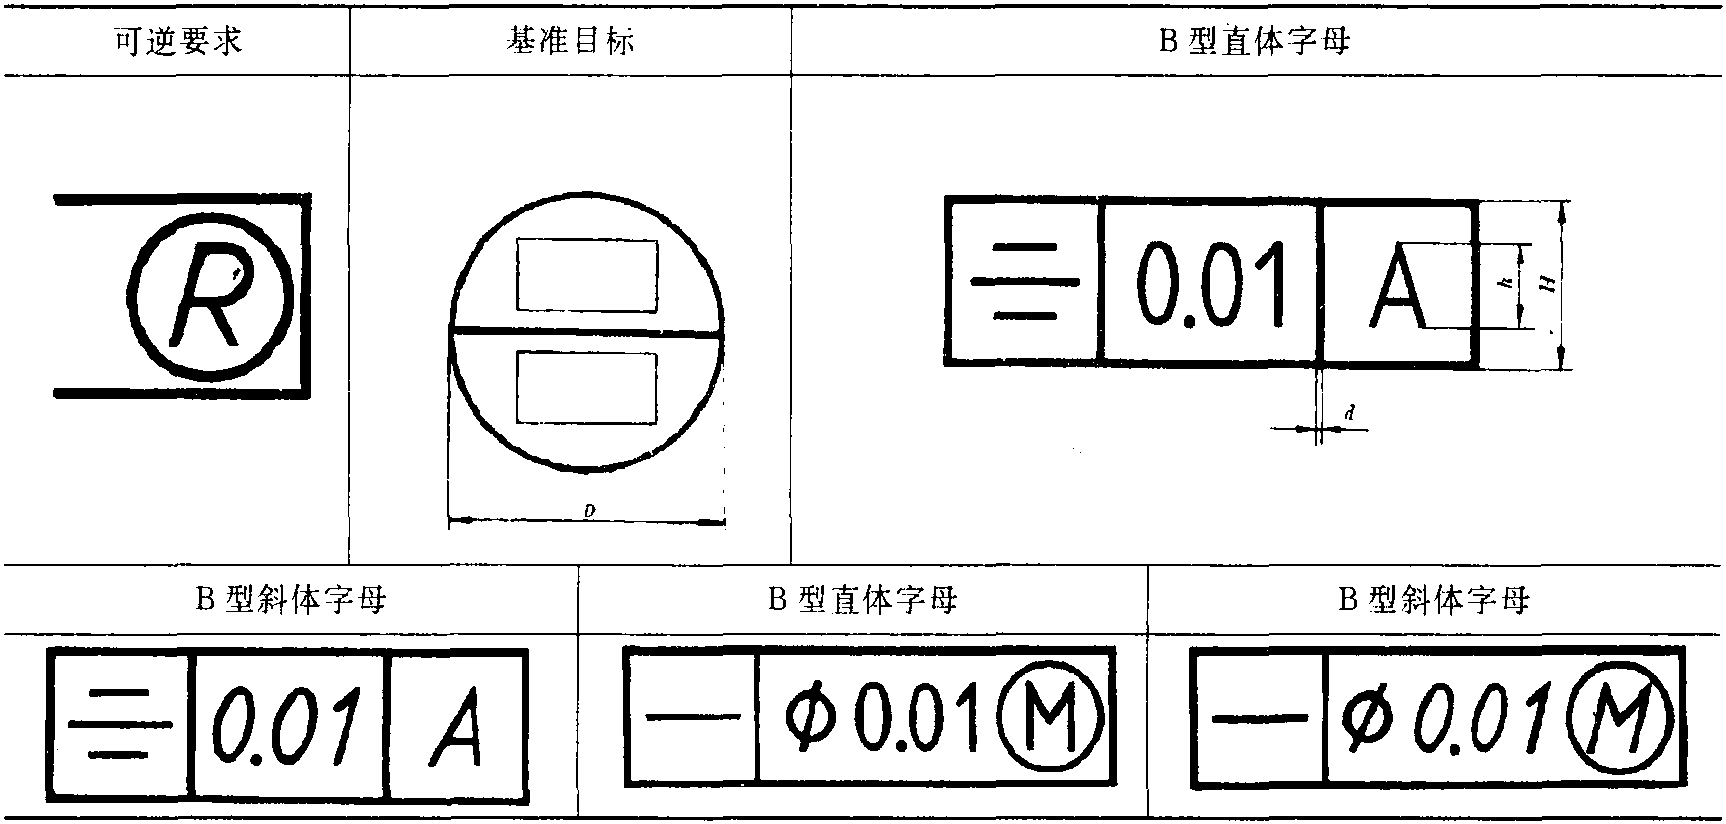 2.1 形位公差符号的尺寸和比例